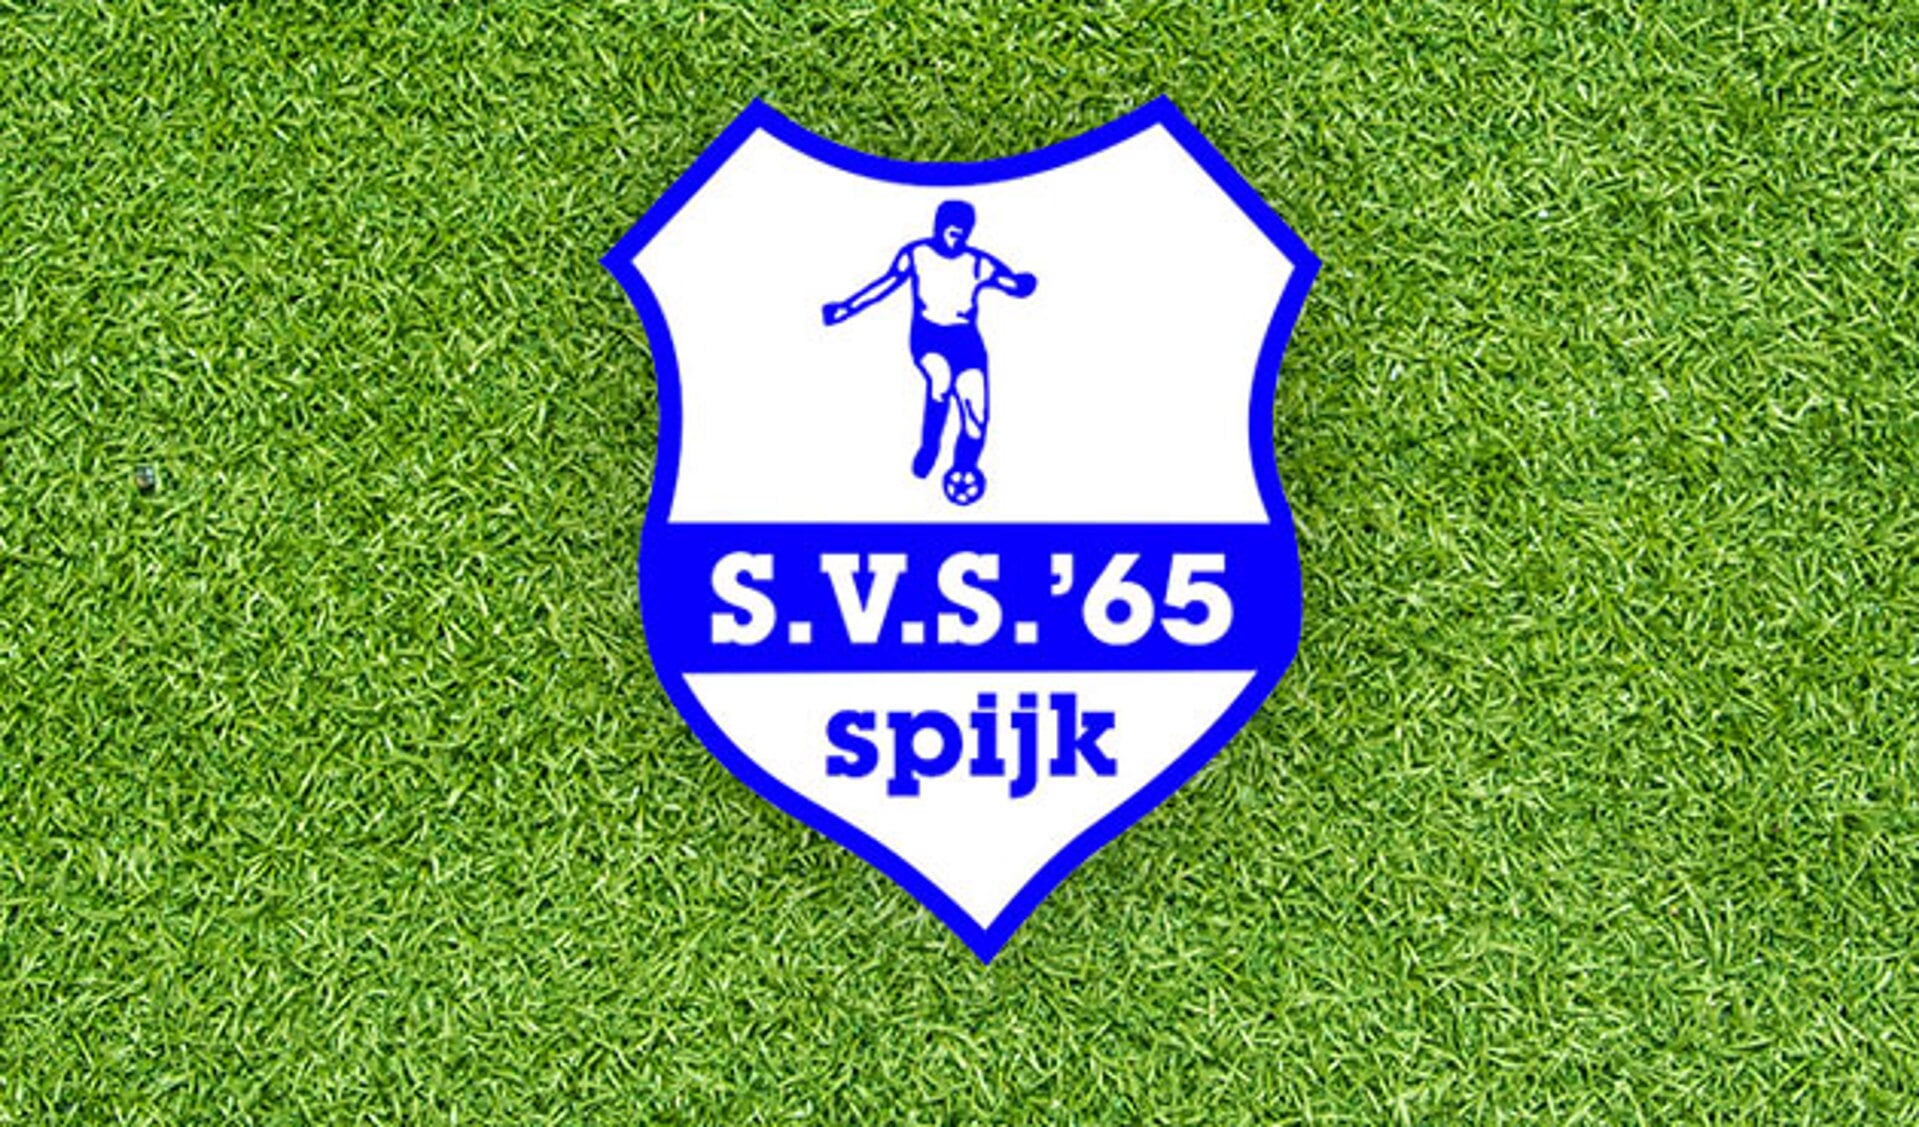 SVS'65 haalt opnieuw uit: 0-7